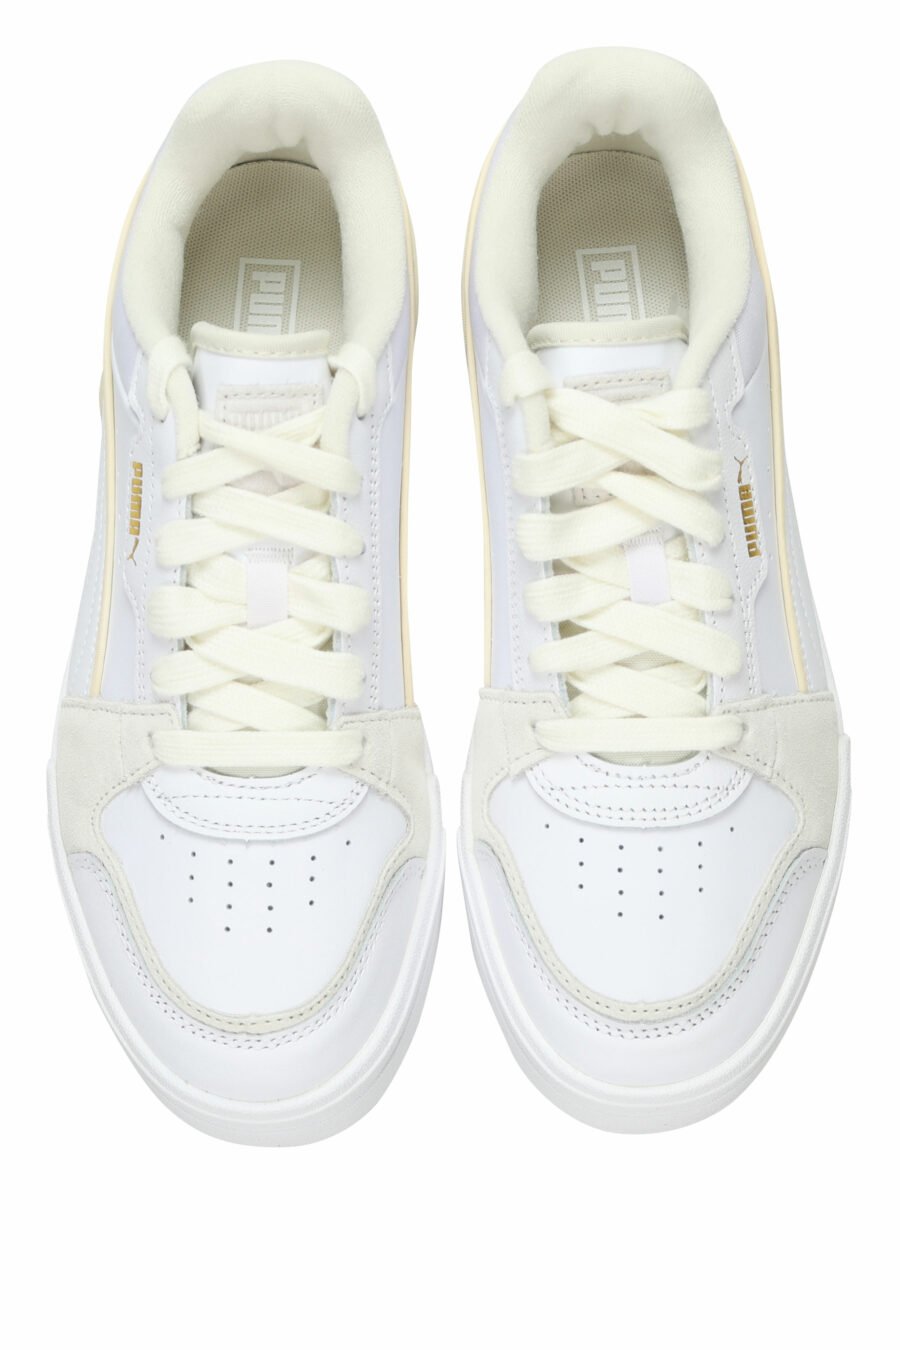 Zapatillas blancas con gris "CA Pro lux III" - 4099686578060 4